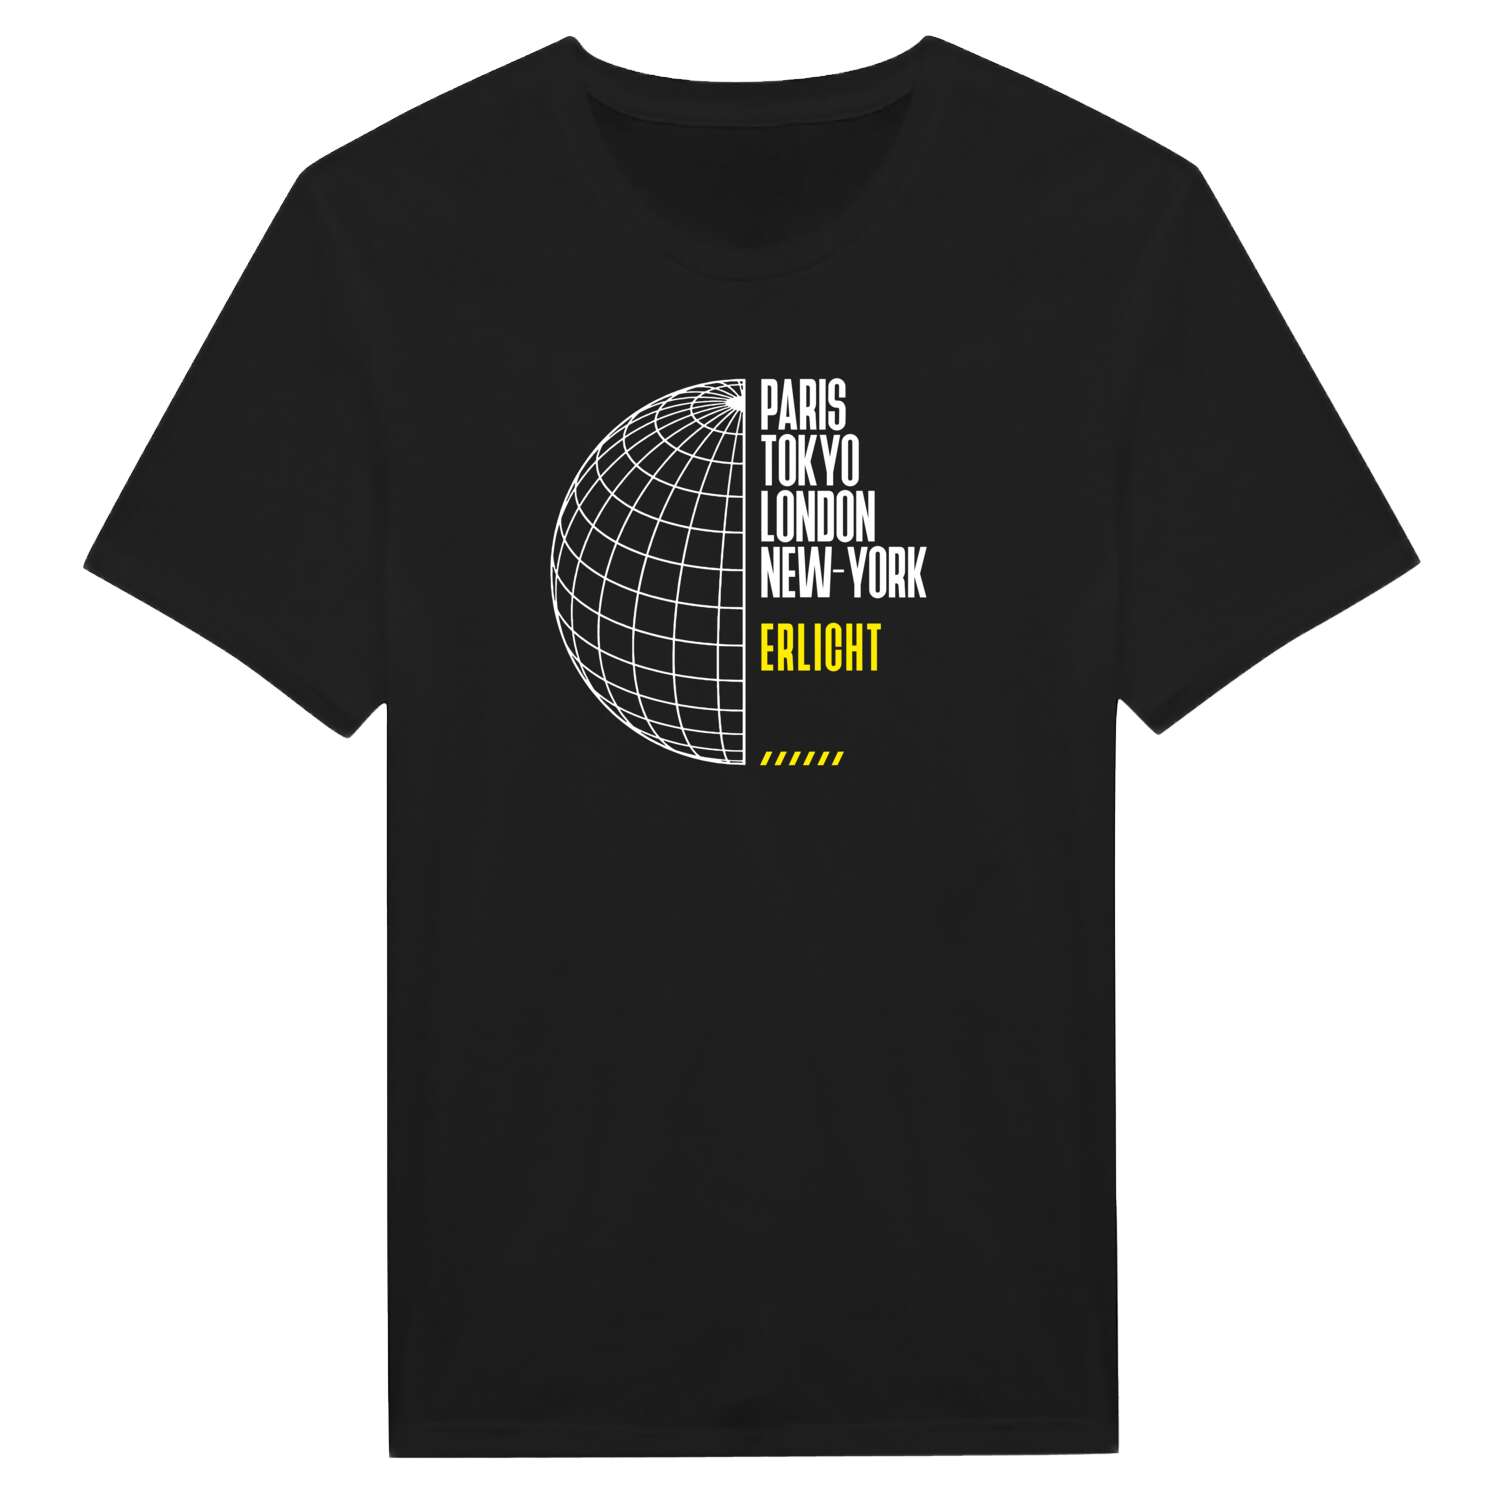 Erlicht T-Shirt »Paris Tokyo London«